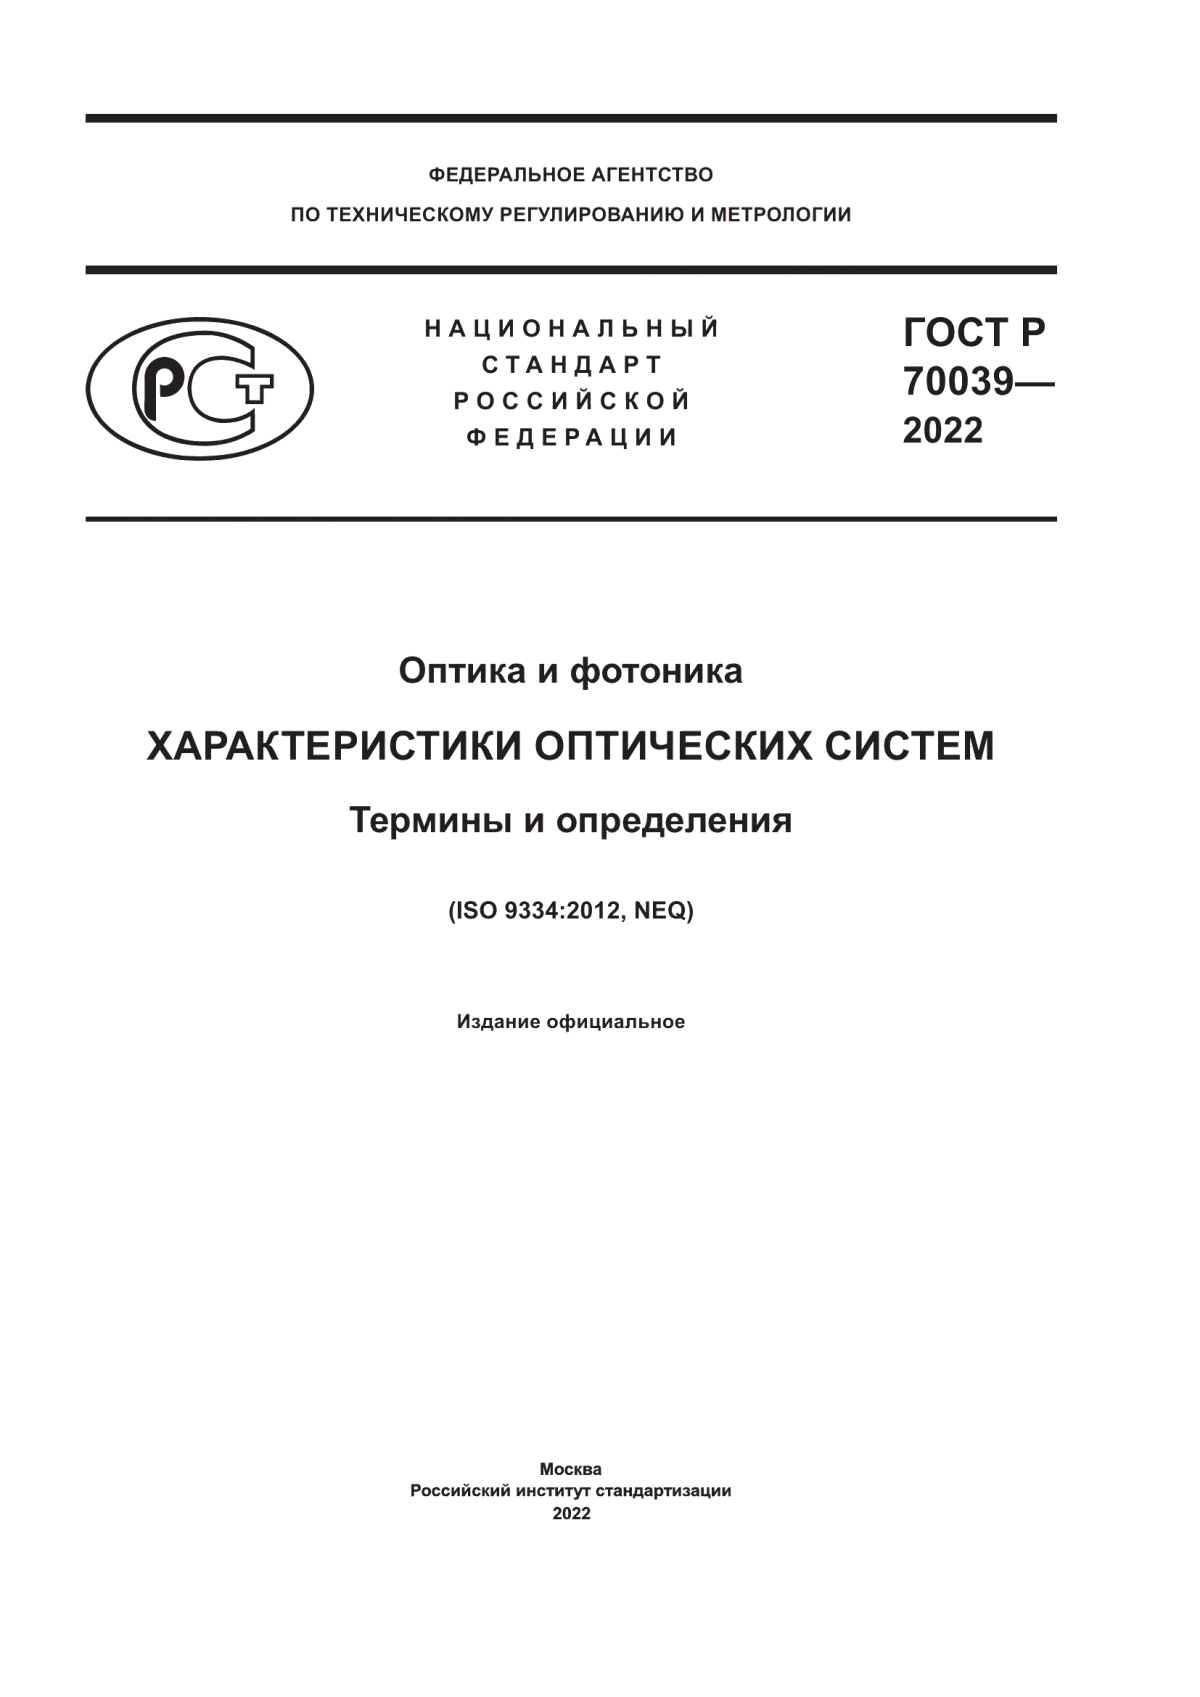 ГОСТ Р 70039-2022 Оптика и фотоника. Характеристики оптических систем. Термины и определения